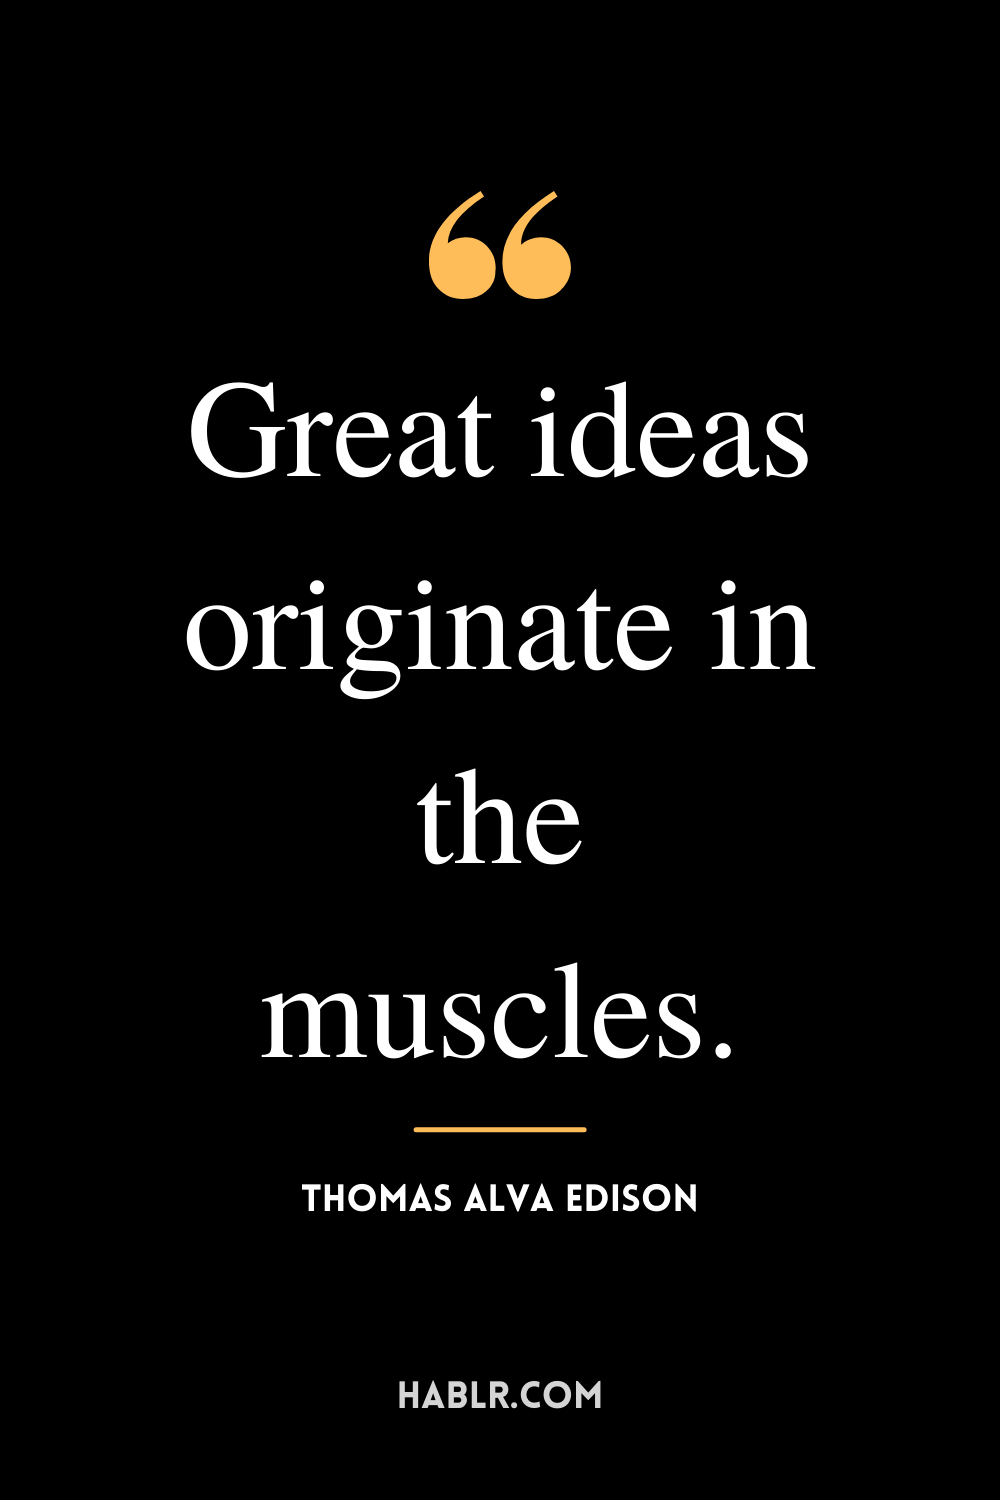 "Great ideas originate in the muscles." -Thomas Alva Edison